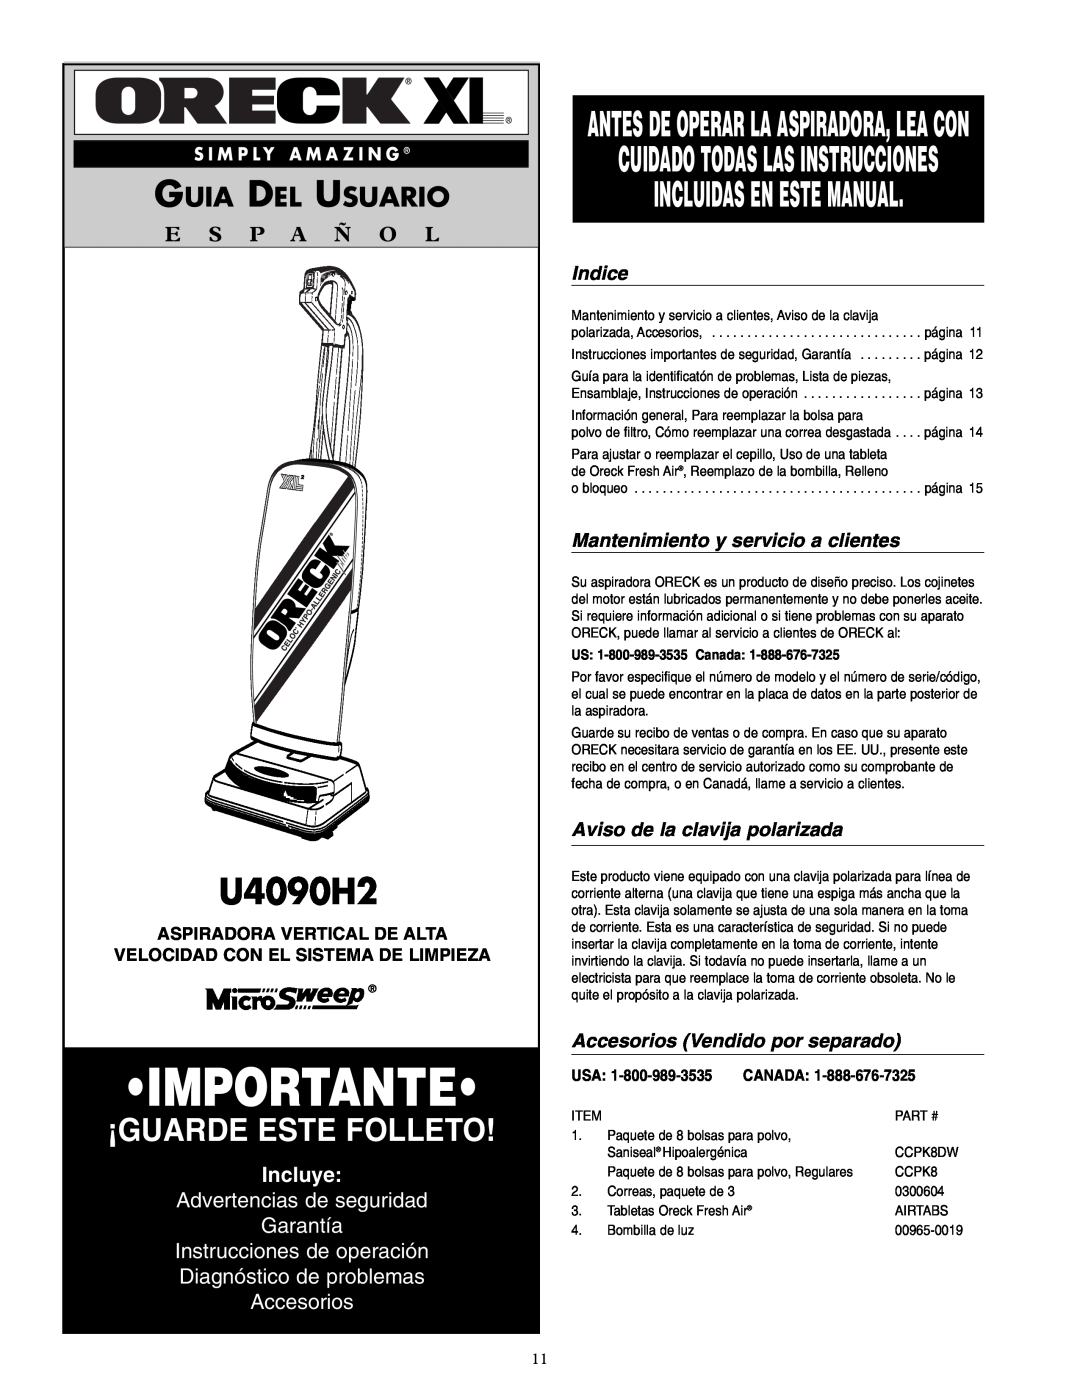 Oreck U4090H2 Incluidas En Este Manual, Guia Del Usuario, E S P A Ñ O L, Incluye, Advertencias de seguridad Garantía 